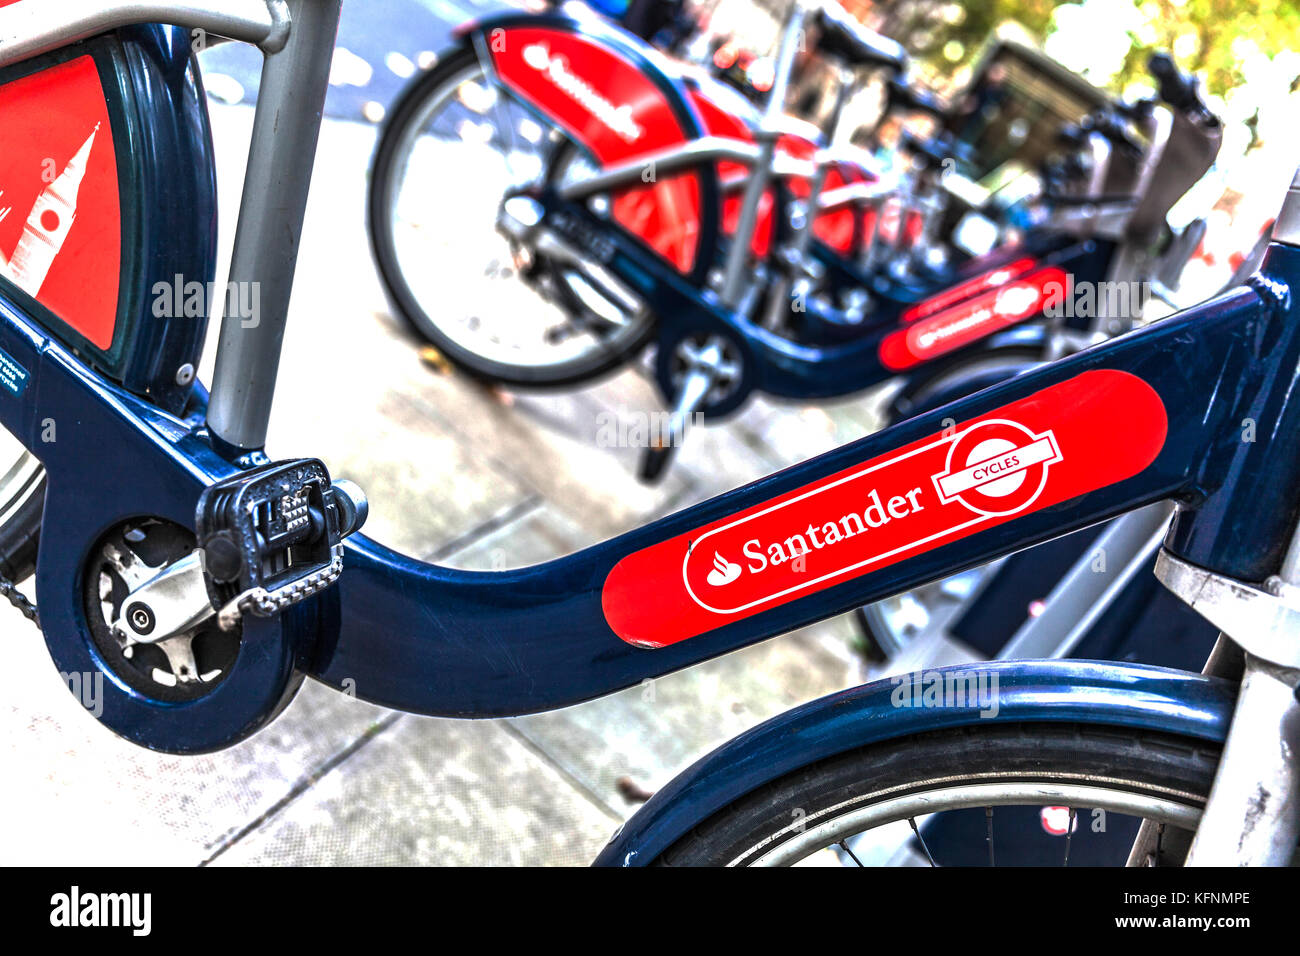 Cicli di Santander, self service noleggio bici, Londra, Inghilterra, Regno Unito. Foto Stock